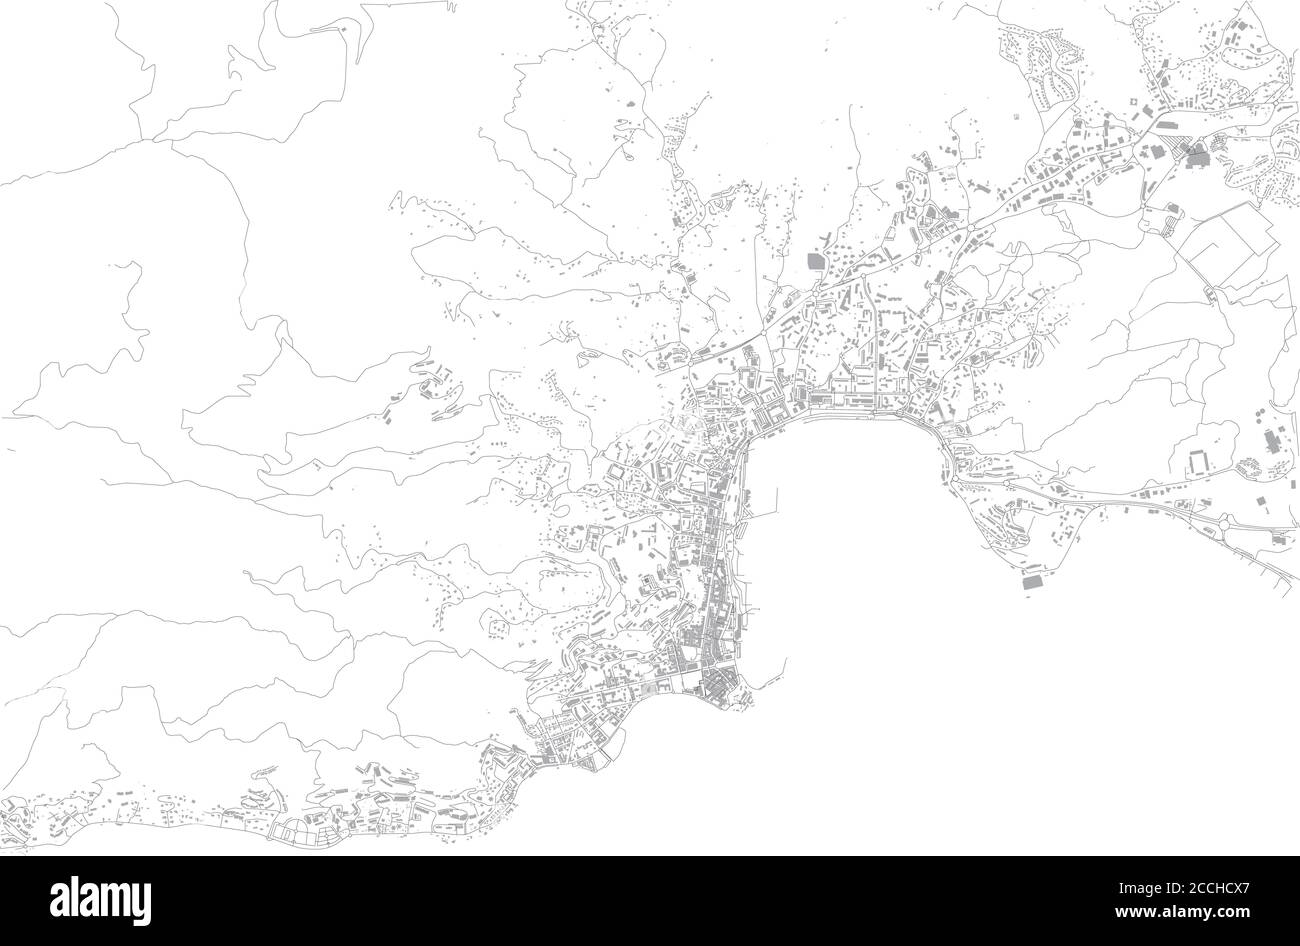 Carte d'Ajaccio, vue satellite, ville, Corse, France. Rue et bâtiment de la capitale Illustration de Vecteur